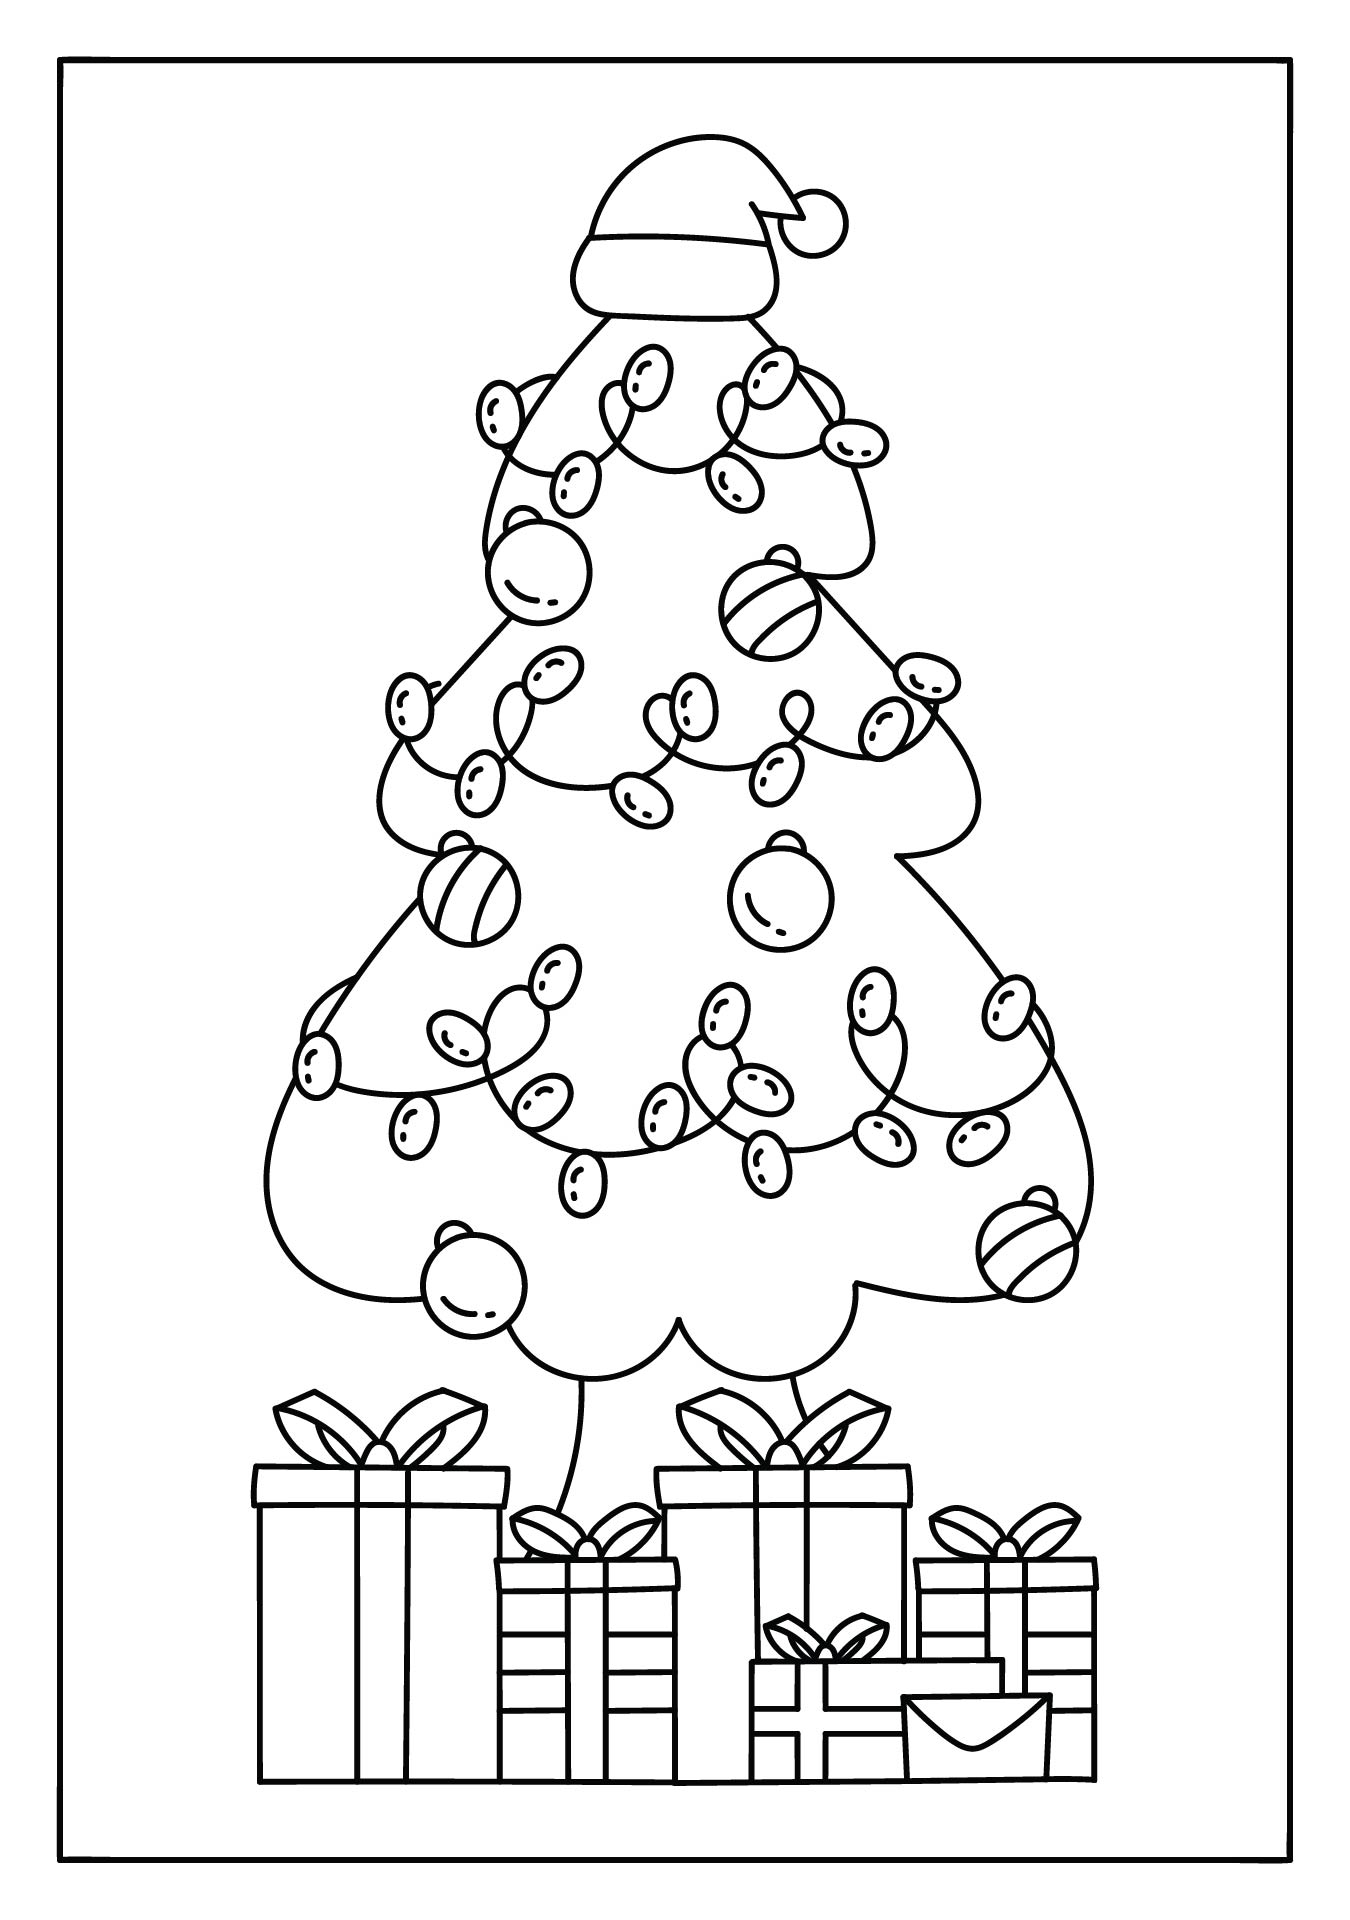 Printable Cheery Christmas Tree Coloring Page For The Holiday Season